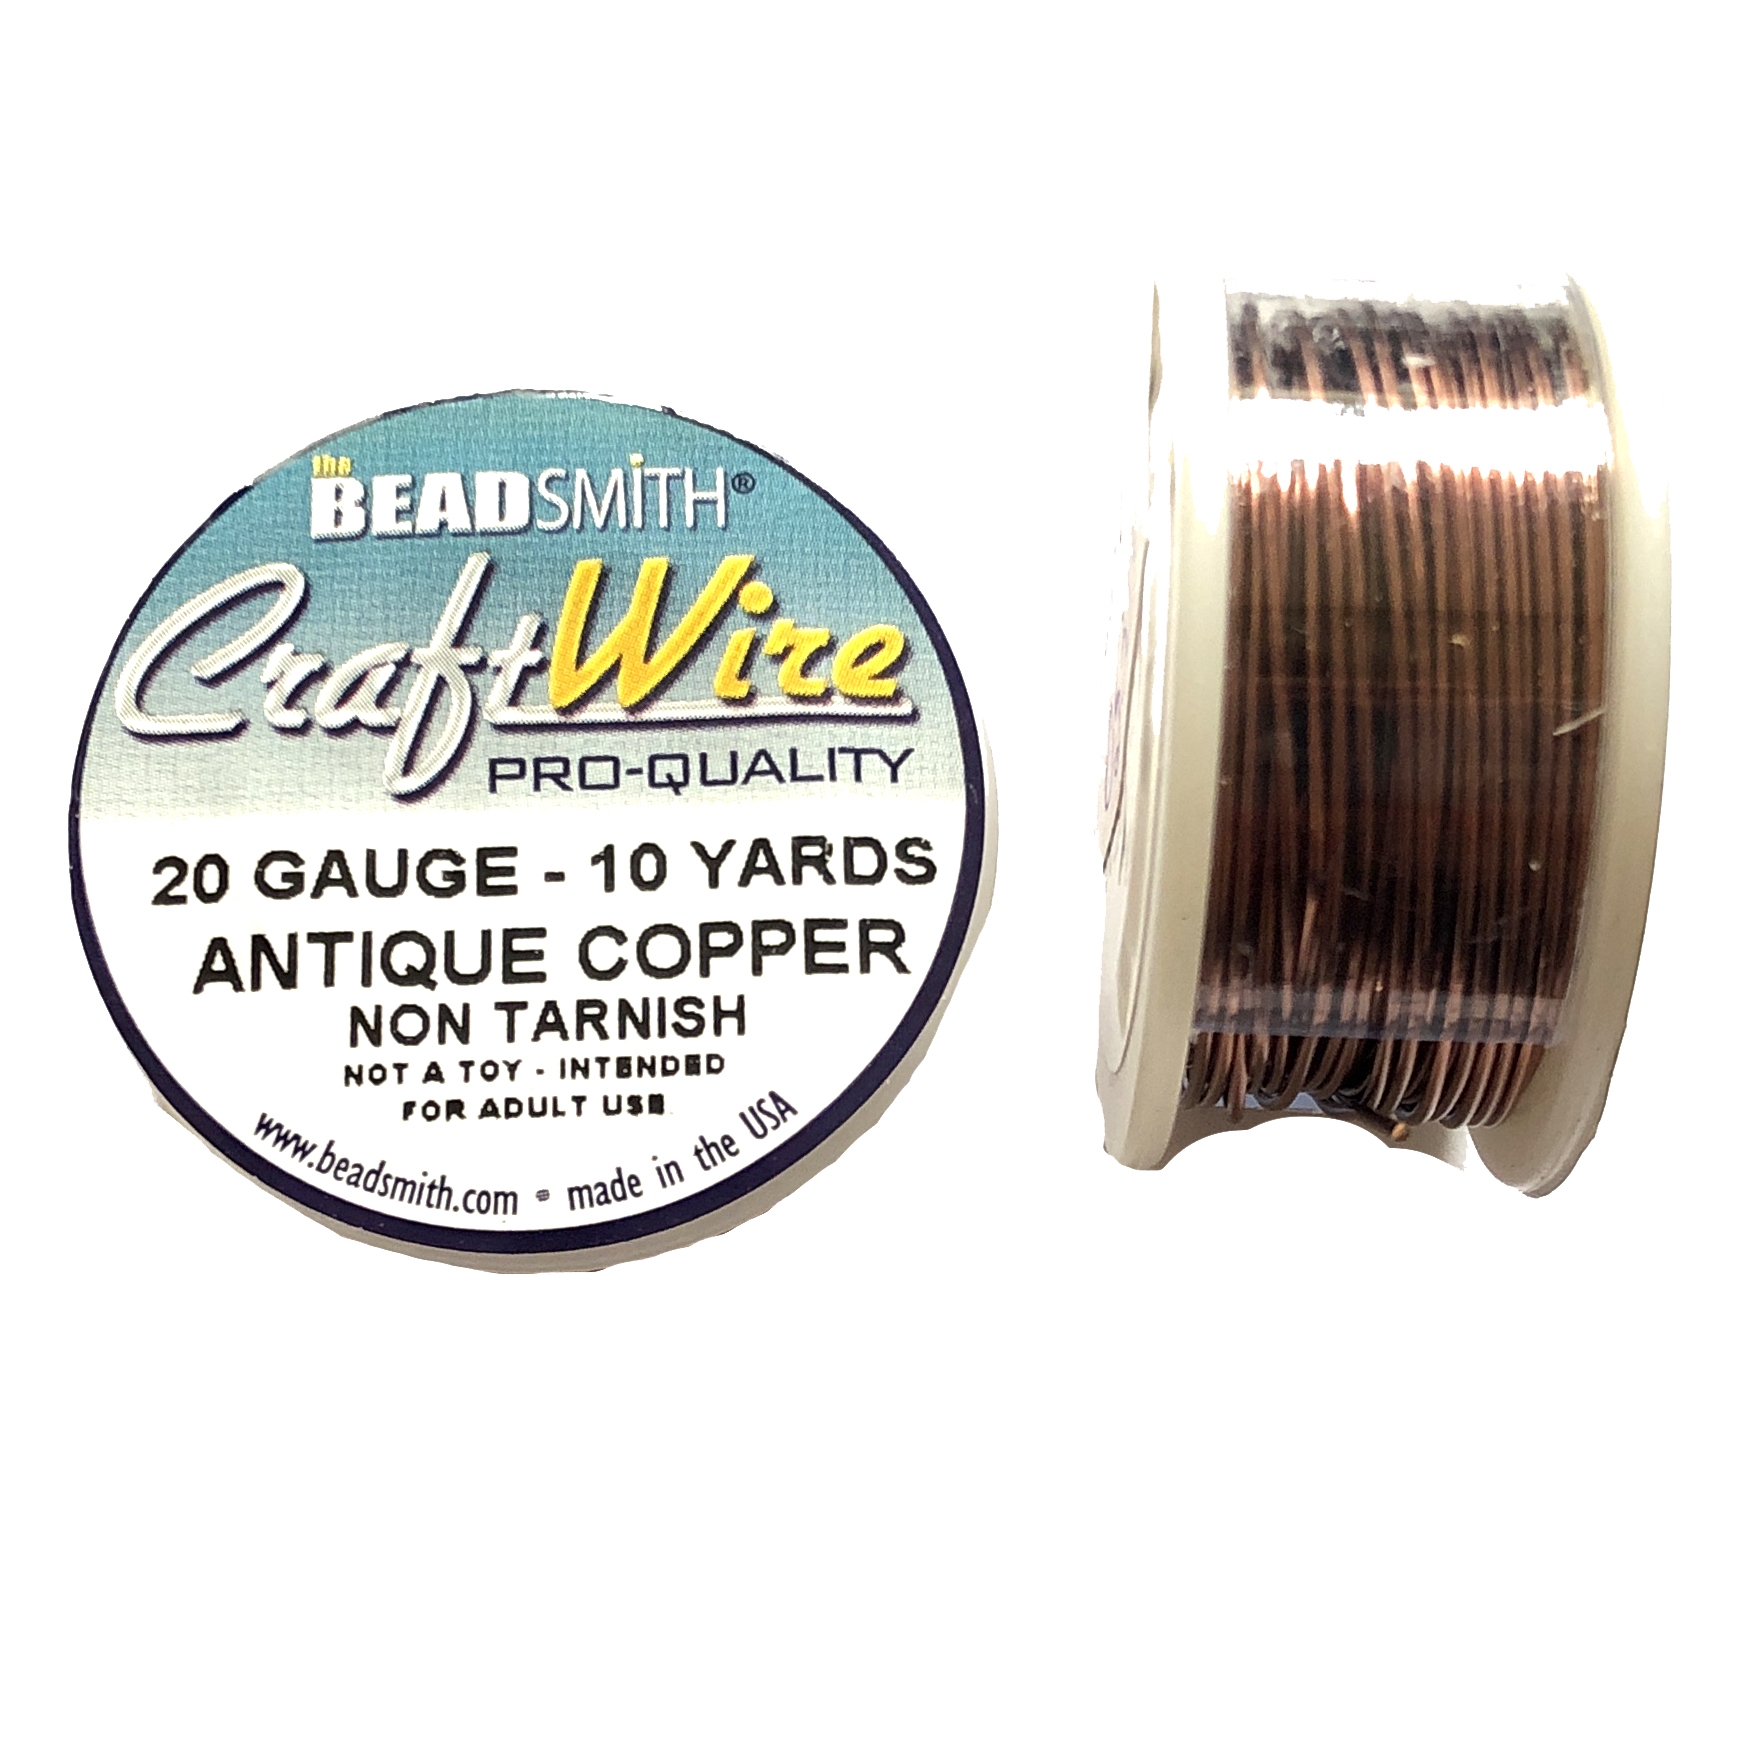 Beadsmith Craft Wire 20 Gauge Antique Copper Round Wire 10 Yards 